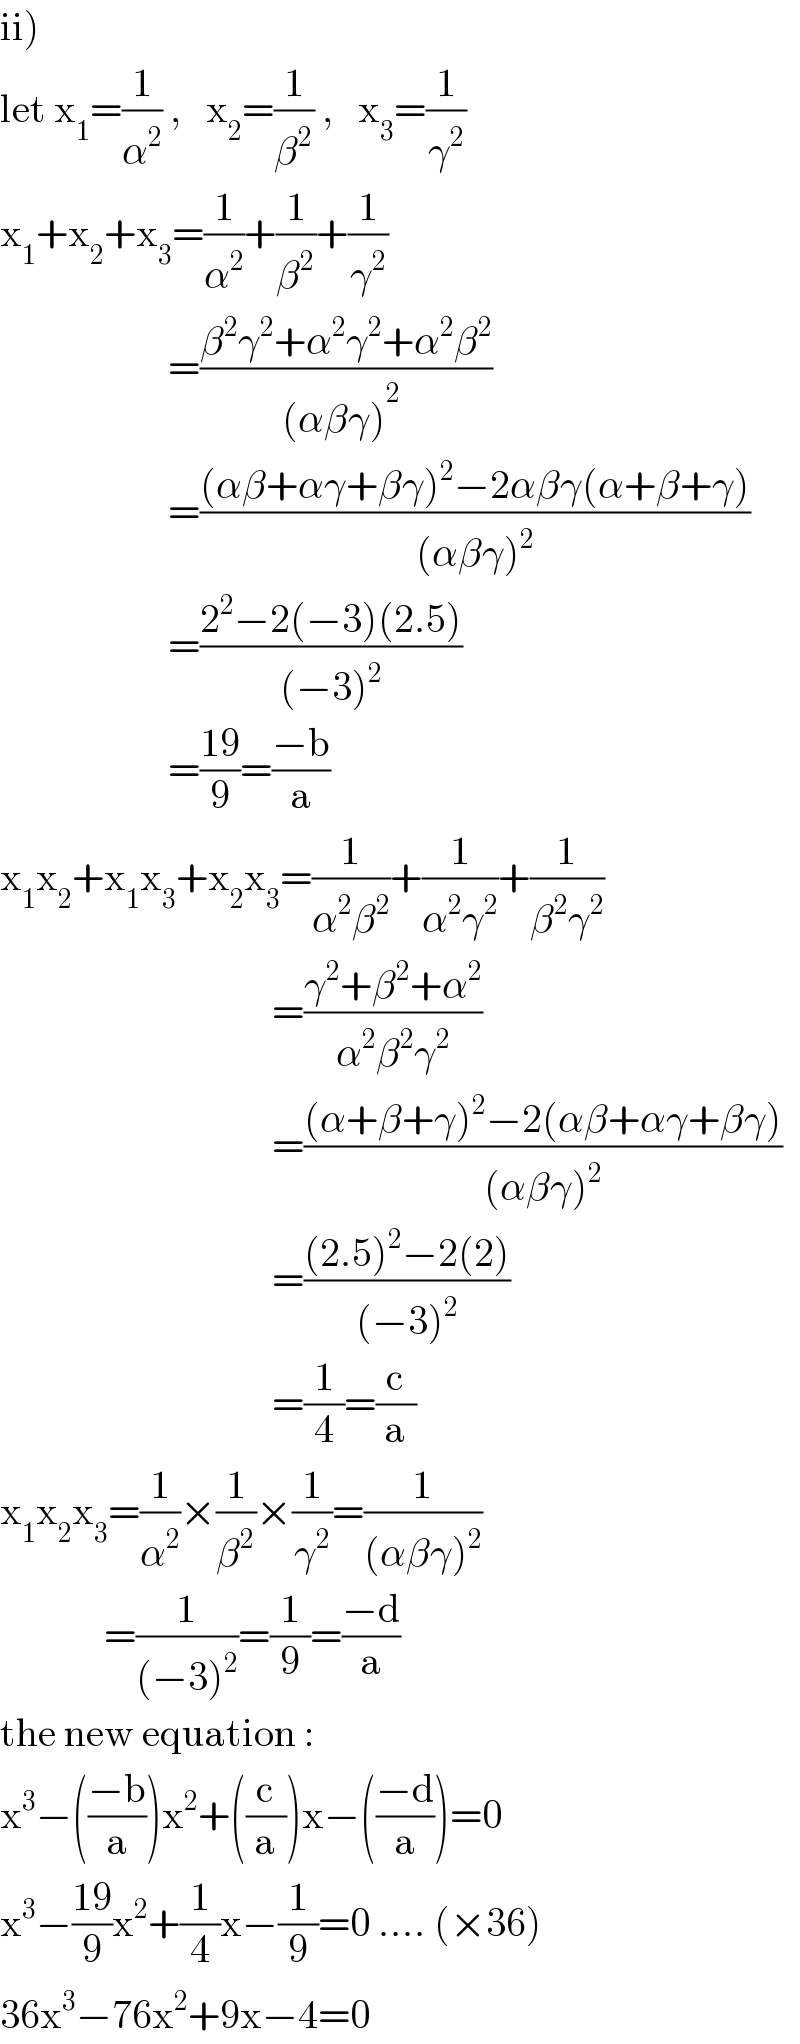 ii)   let x_1 =(1/α^2 ) ,   x_2 =(1/β^2 ) ,   x_3 =(1/γ^2 )  x_1 +x_2 +x_3 =(1/α^2 )+(1/β^2 )+(1/γ^2 )                       =((β^2 γ^2 +α^2 γ^2 +α^2 β^2 )/((αβγ)^2_  ))                       =(((αβ+αγ+βγ)^2 −2αβγ(α+β+γ))/((αβγ)^2 ))                       =((2^2 −2(−3)(2.5))/((−3)^2 ))                       =((19)/9)=((−b)/a)  x_1 x_2 +x_1 x_3 +x_2 x_3 =(1/(α^2 β^2 ))+(1/(α^2 γ^2 ))+(1/(β^2 γ^2 ))                                             =((γ^2 +β^2 +α^2 )/(α^2 β^2 γ^2 ))                                    =(((α+β+γ)^2 −2(αβ+αγ+βγ))/((αβγ)^2 ))                                    =(((2.5)^2 −2(2))/((−3)^2 ))                                    =(1/4)=(c/a)  x_1 x_2 x_3 =(1/α^2 )×(1/β^2 )×(1/γ^2 )=(1/((αβγ)^2 ))               =(1/((−3)^2 ))=(1/9)=((−d)/a)  the new equation :  x^3 −(((−b)/a))x^2 +((c/a))x−(((−d)/a))=0  x^3 −((19)/9)x^2 +(1/4)x−(1/9)=0 .... (×36)  36x^3 −76x^2 +9x−4=0  